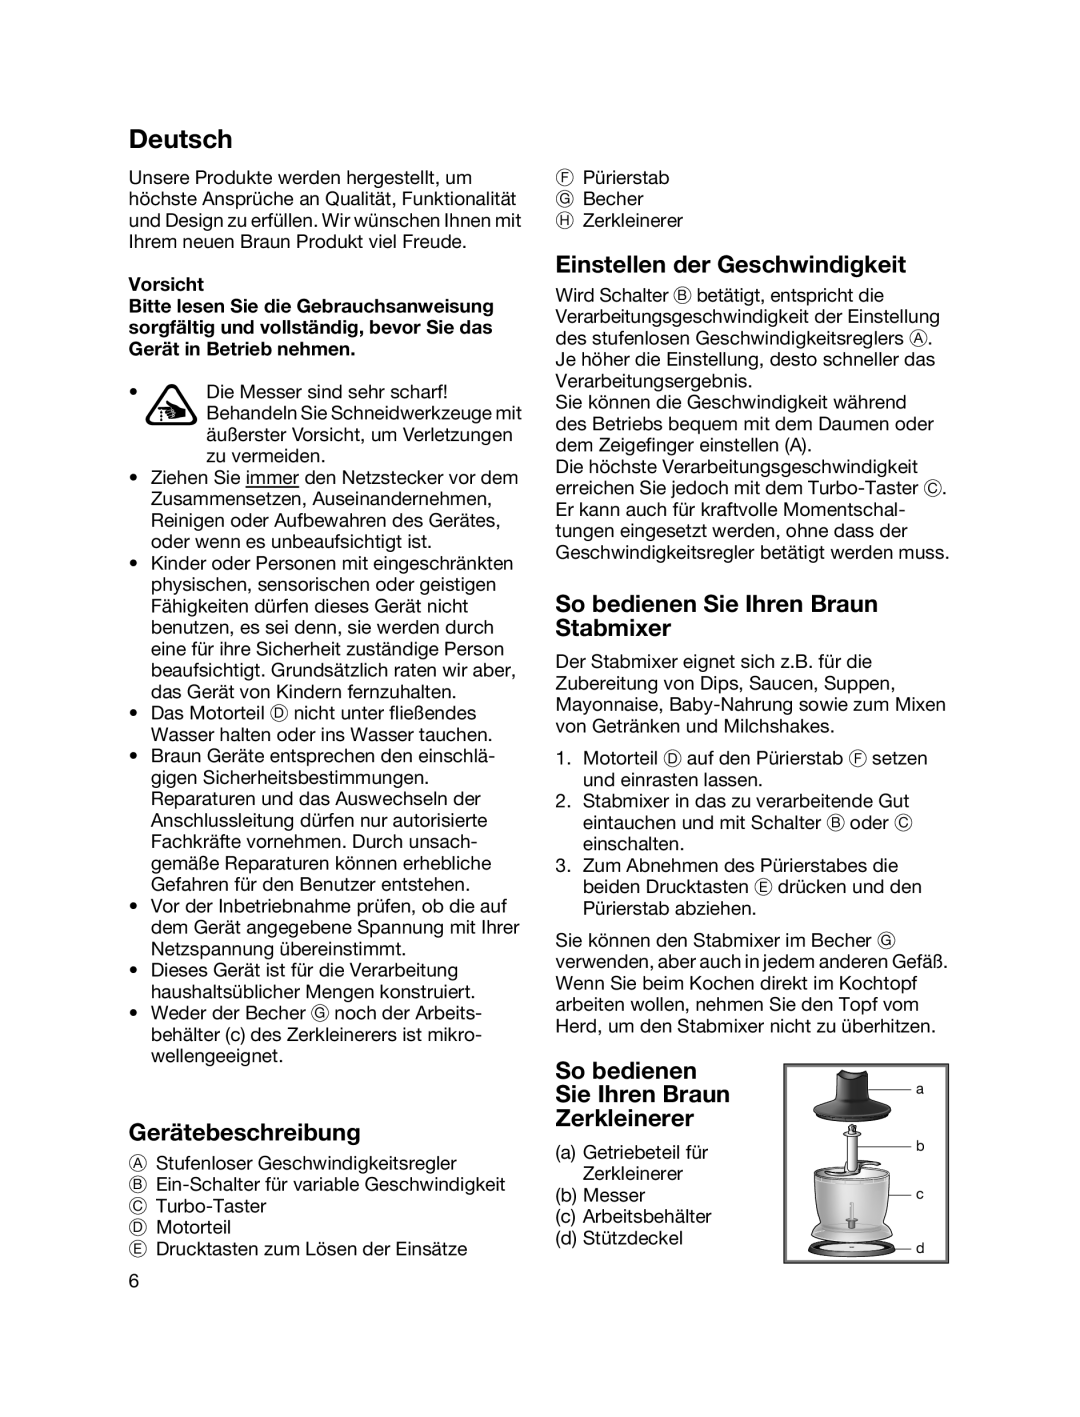 Braun MR700 manual Deutsch, Einstellen der Geschwindigkeit, So bedienen Sie Ihren Braun Stabmixer, Gerätebeschreibung 